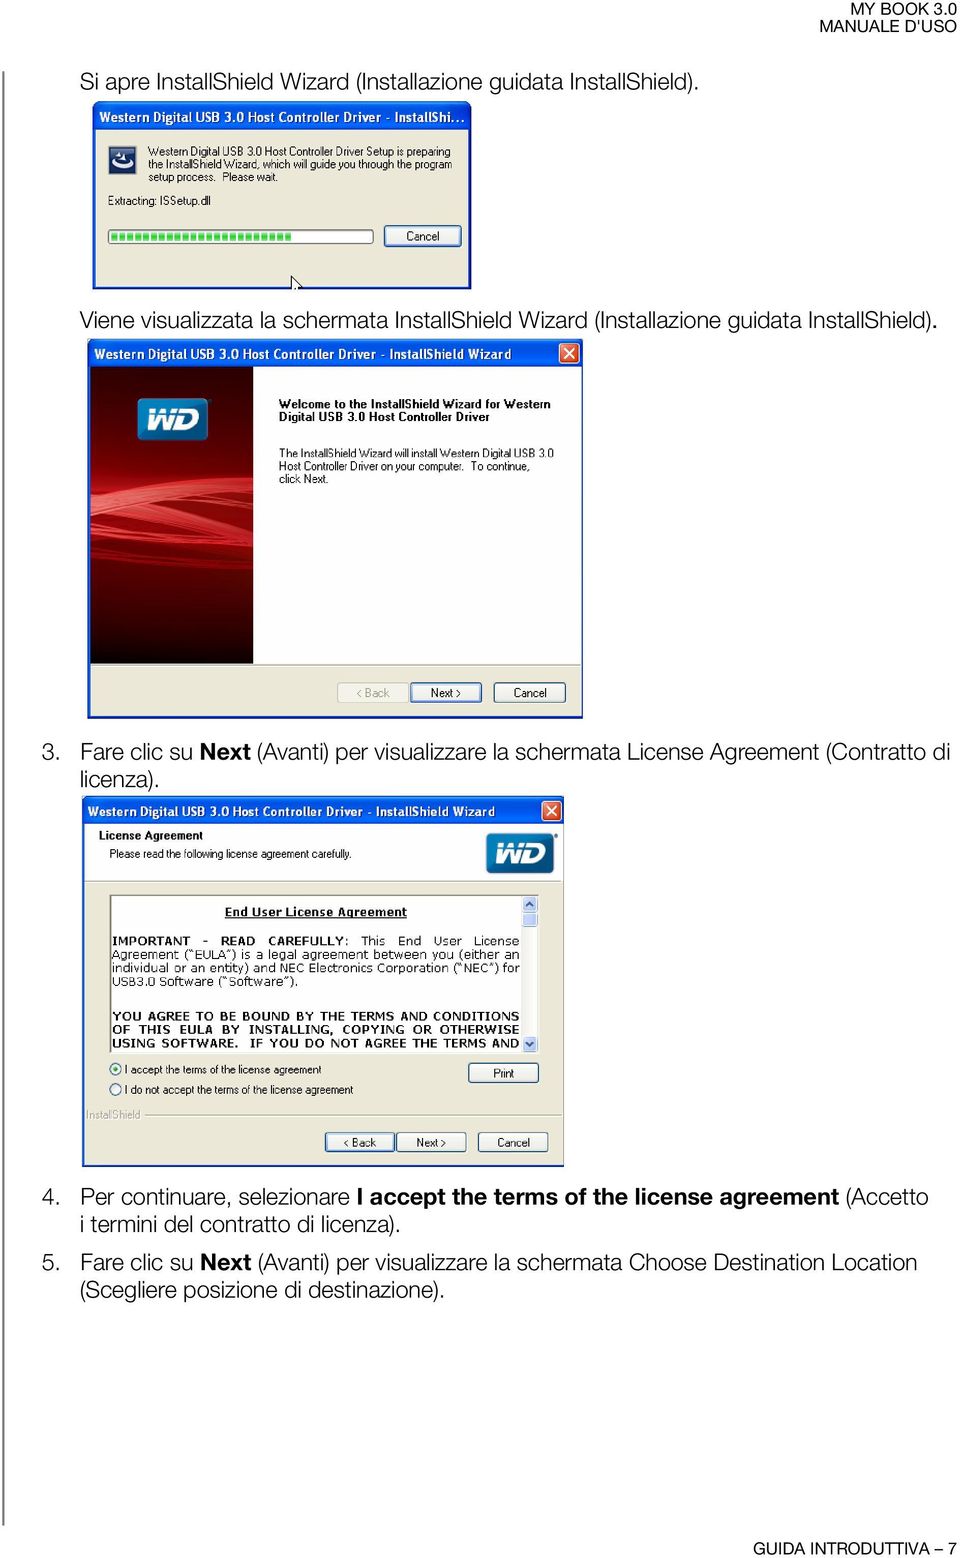 Fare clic su Next (Avanti) per visualizzare la schermata License Agreement (Contratto di licenza). 4.